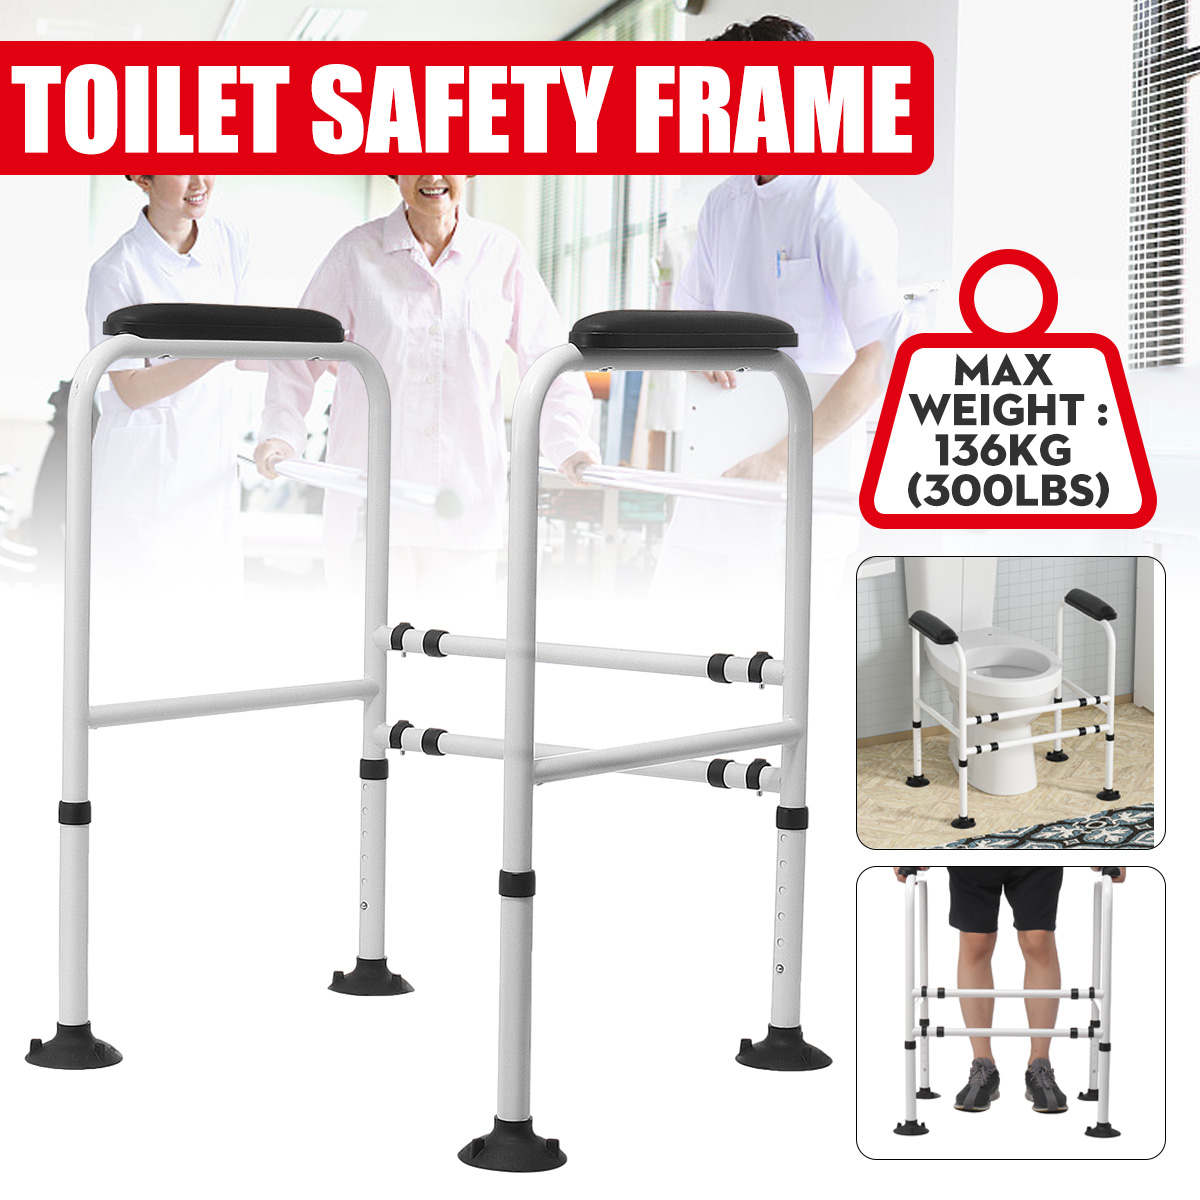 Adjustable-Toilet-Safety-Frame-Hand-Rail-Grab-Bar-Support-for-Elderly-Bathroom-1940089-4